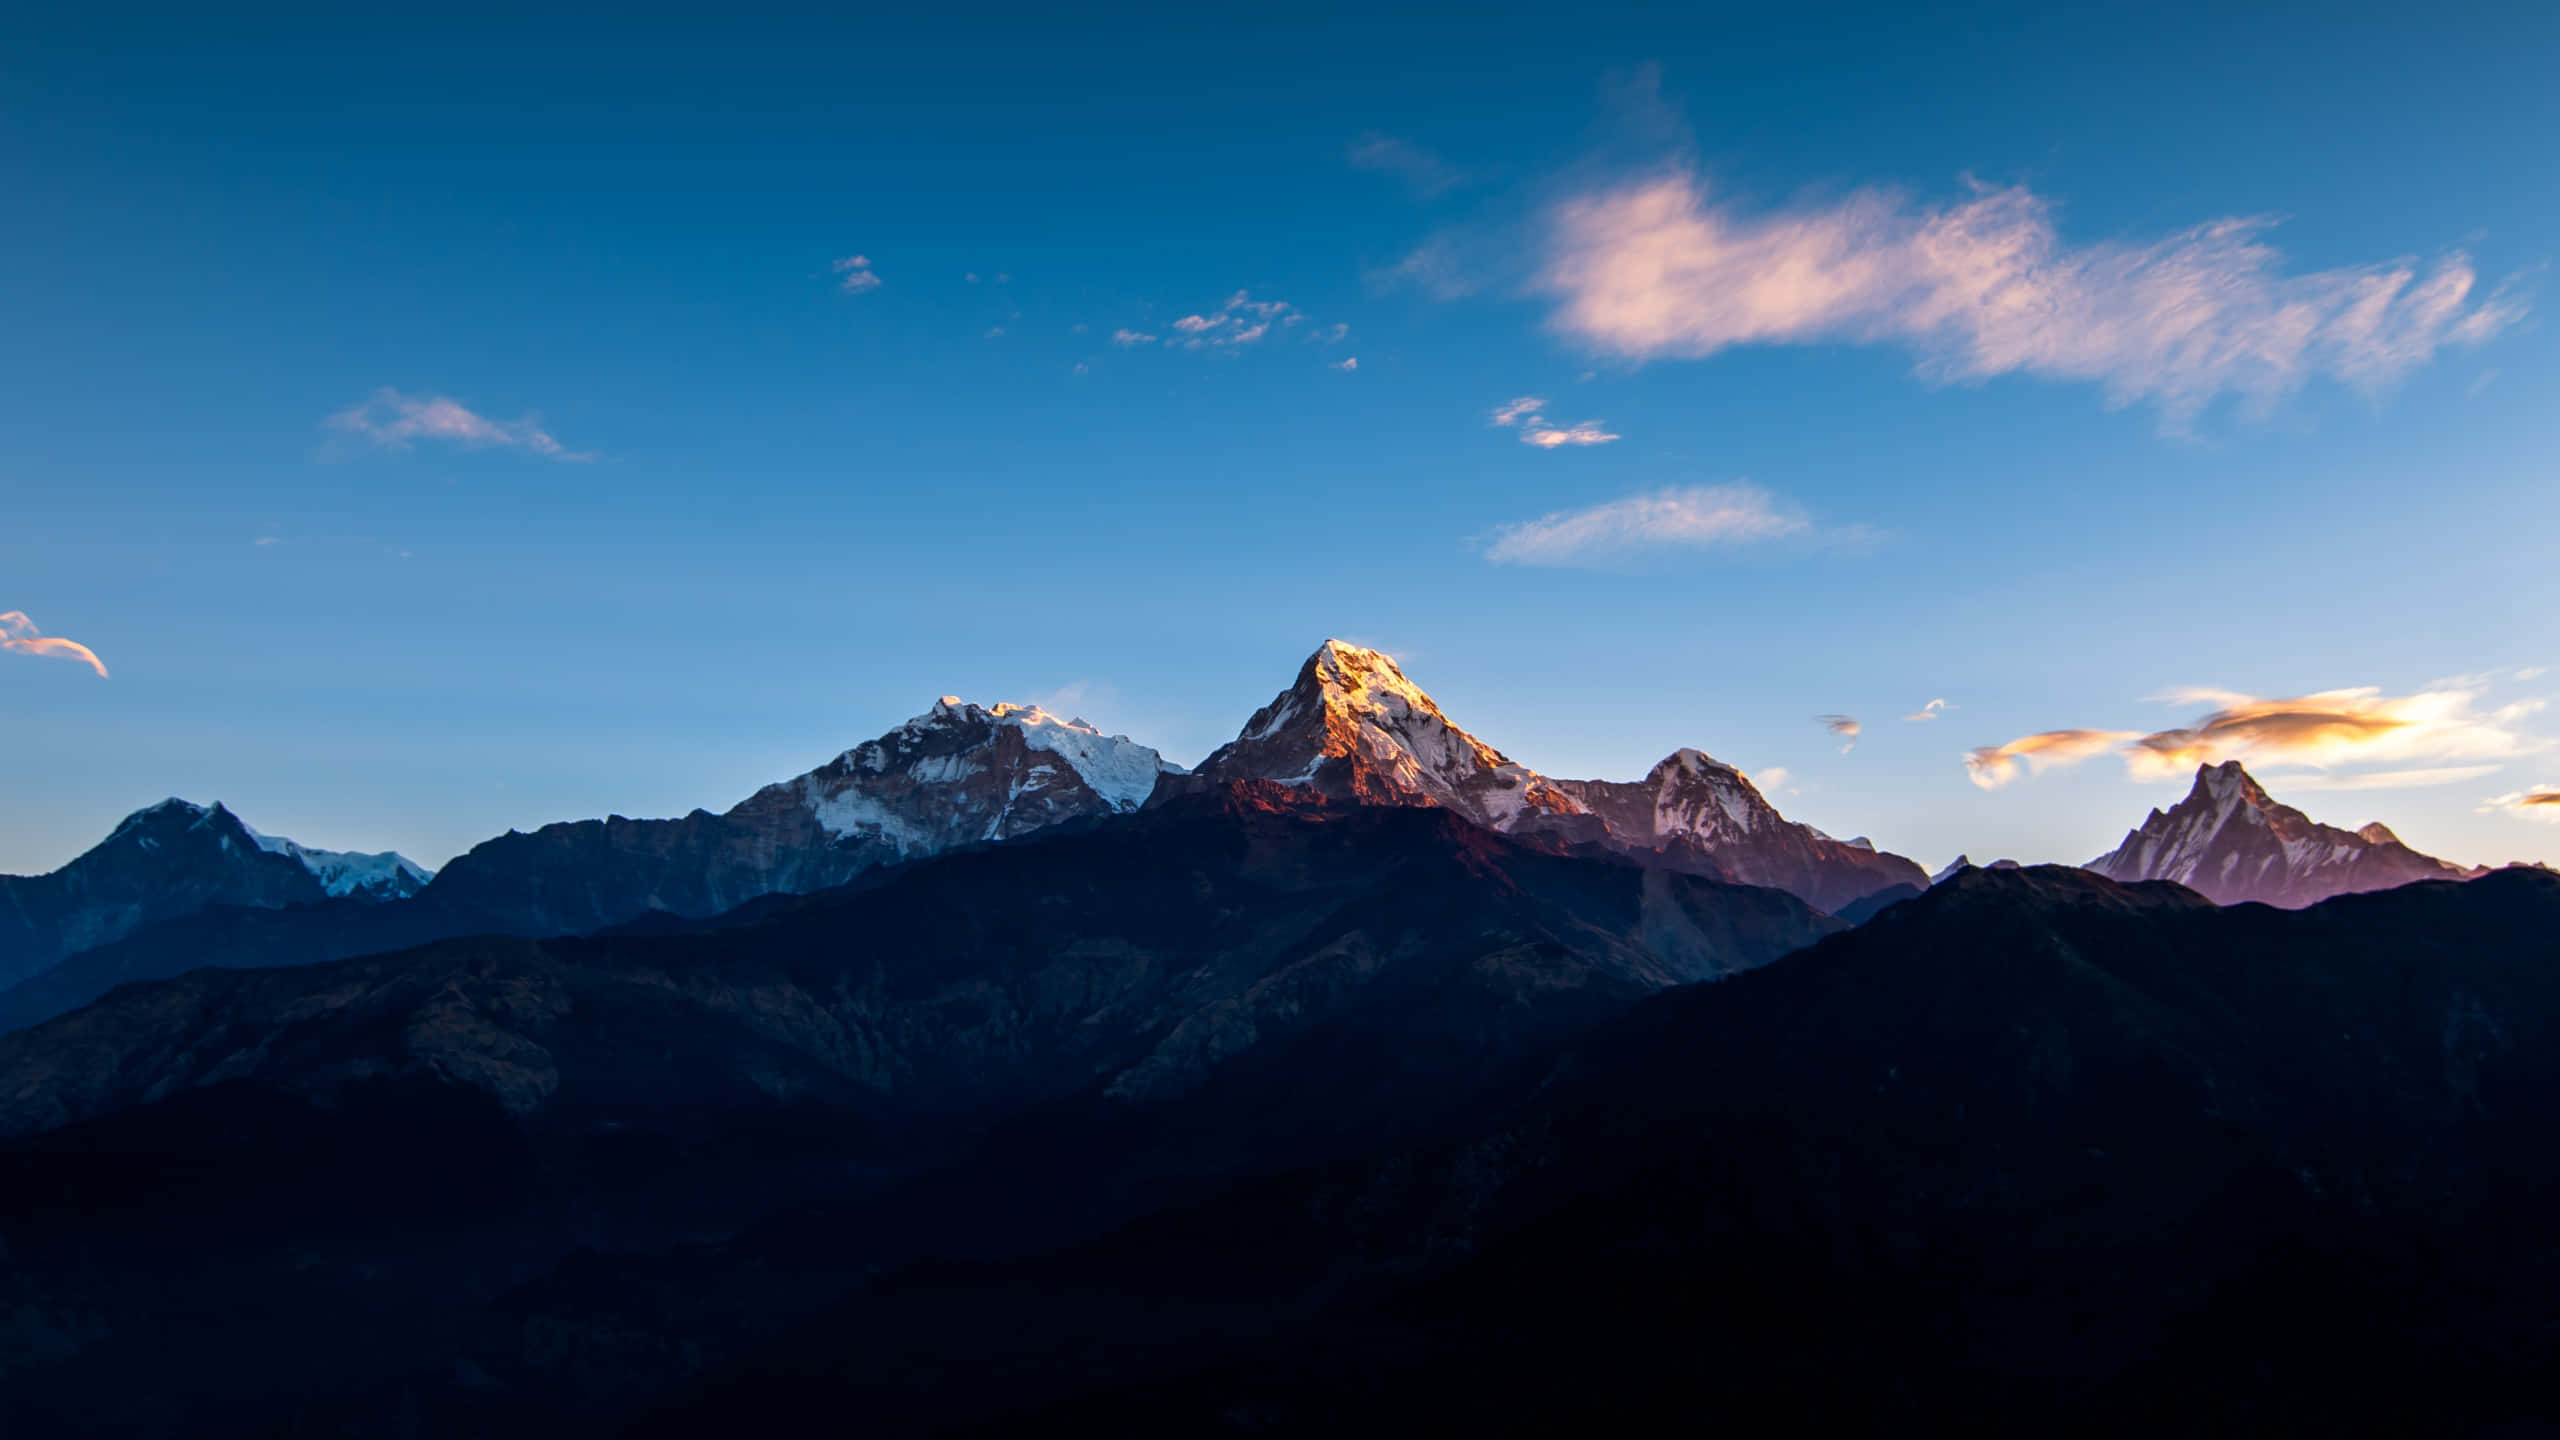 Laimpresionante Belleza De Las Majestuosas Montañas Del Himalaya.